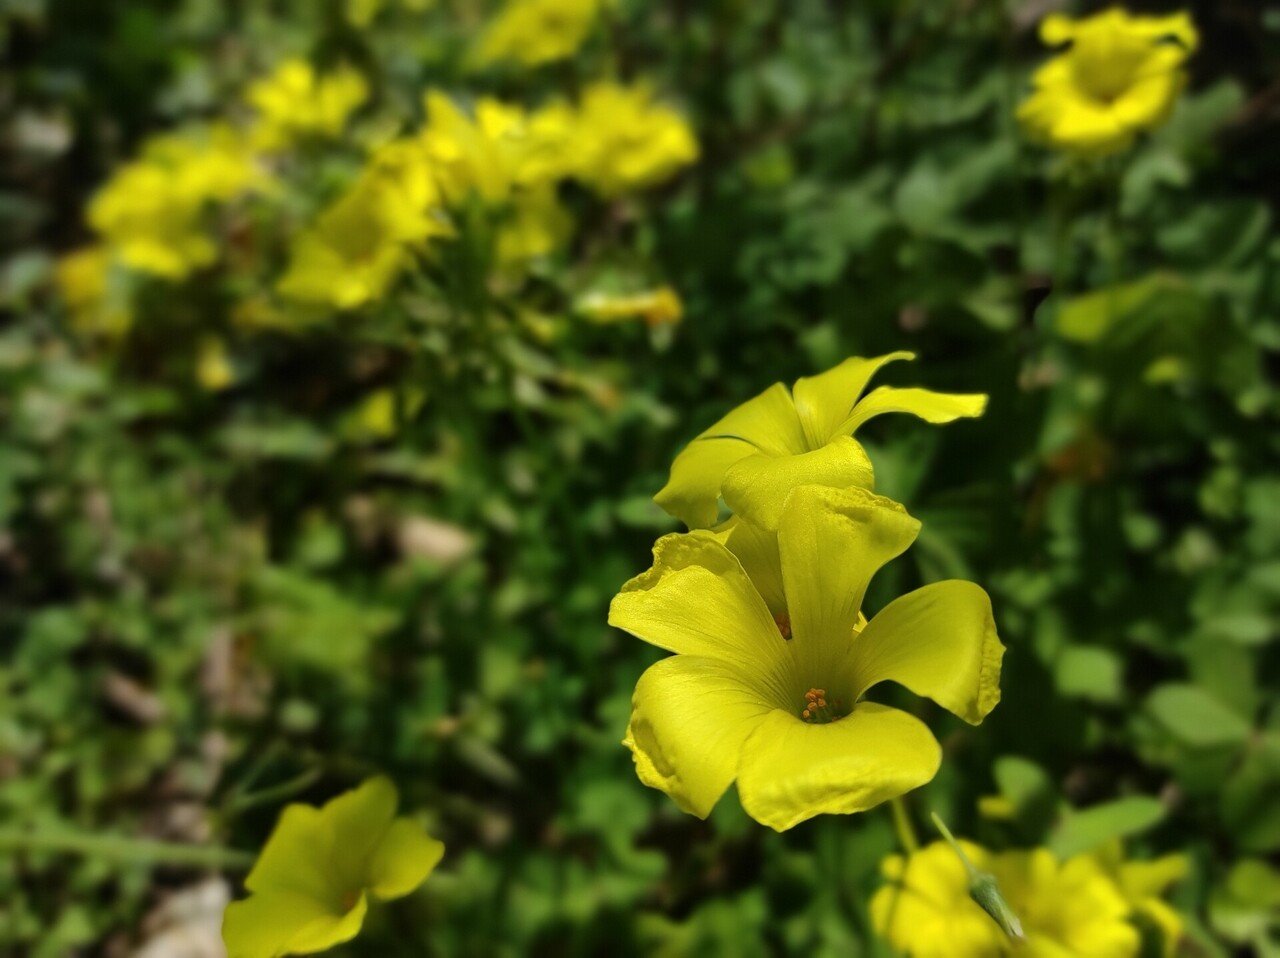 カタバミの花は 食べられる シュウ酸という毒素について ちょっと調べてみた 本田範隆 Note